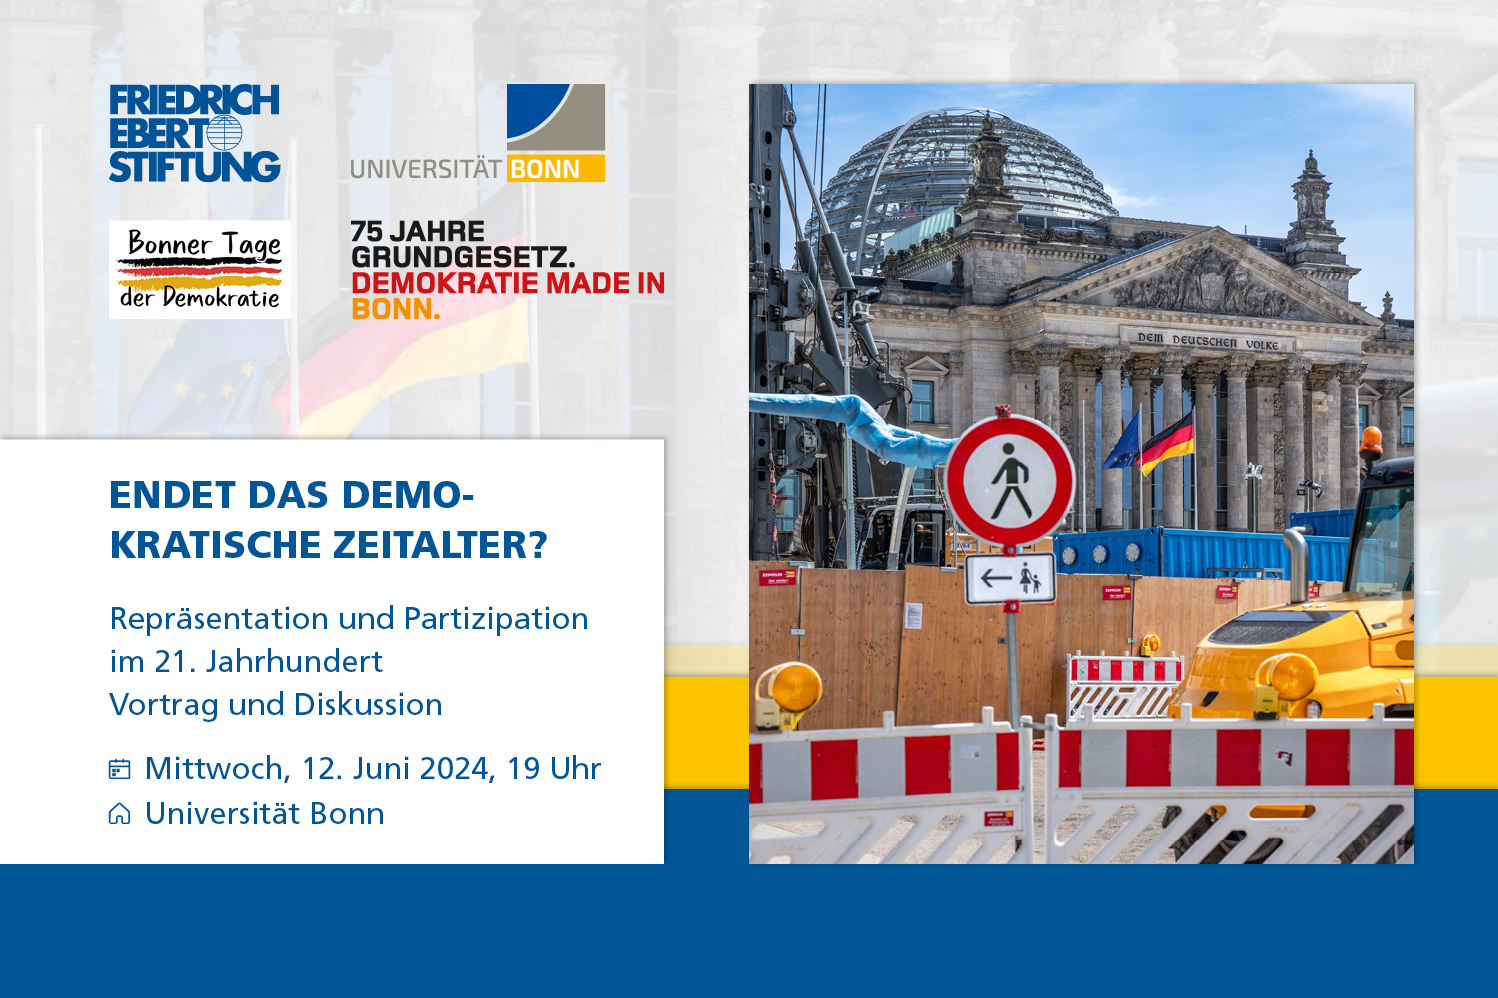 Teaserbild mit einer Fotografie einer Baustelle vor dem Reichstag